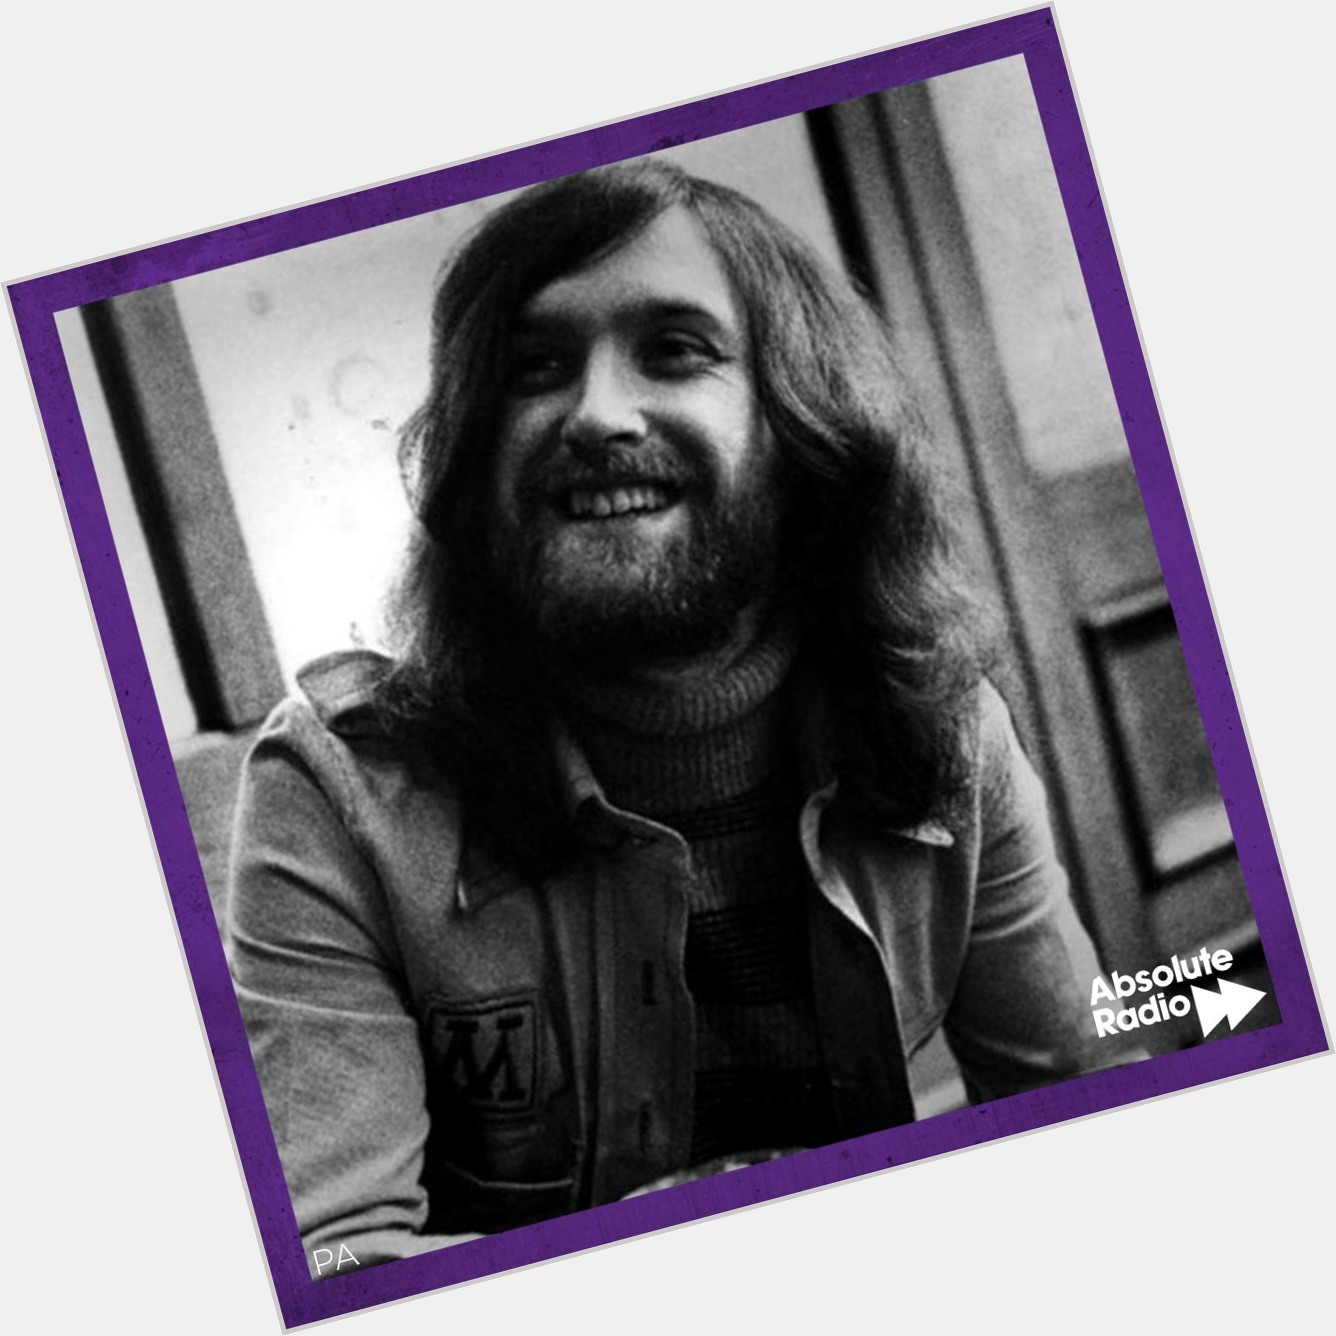 Happy birthday to Kinks legend, Dave Davies! 